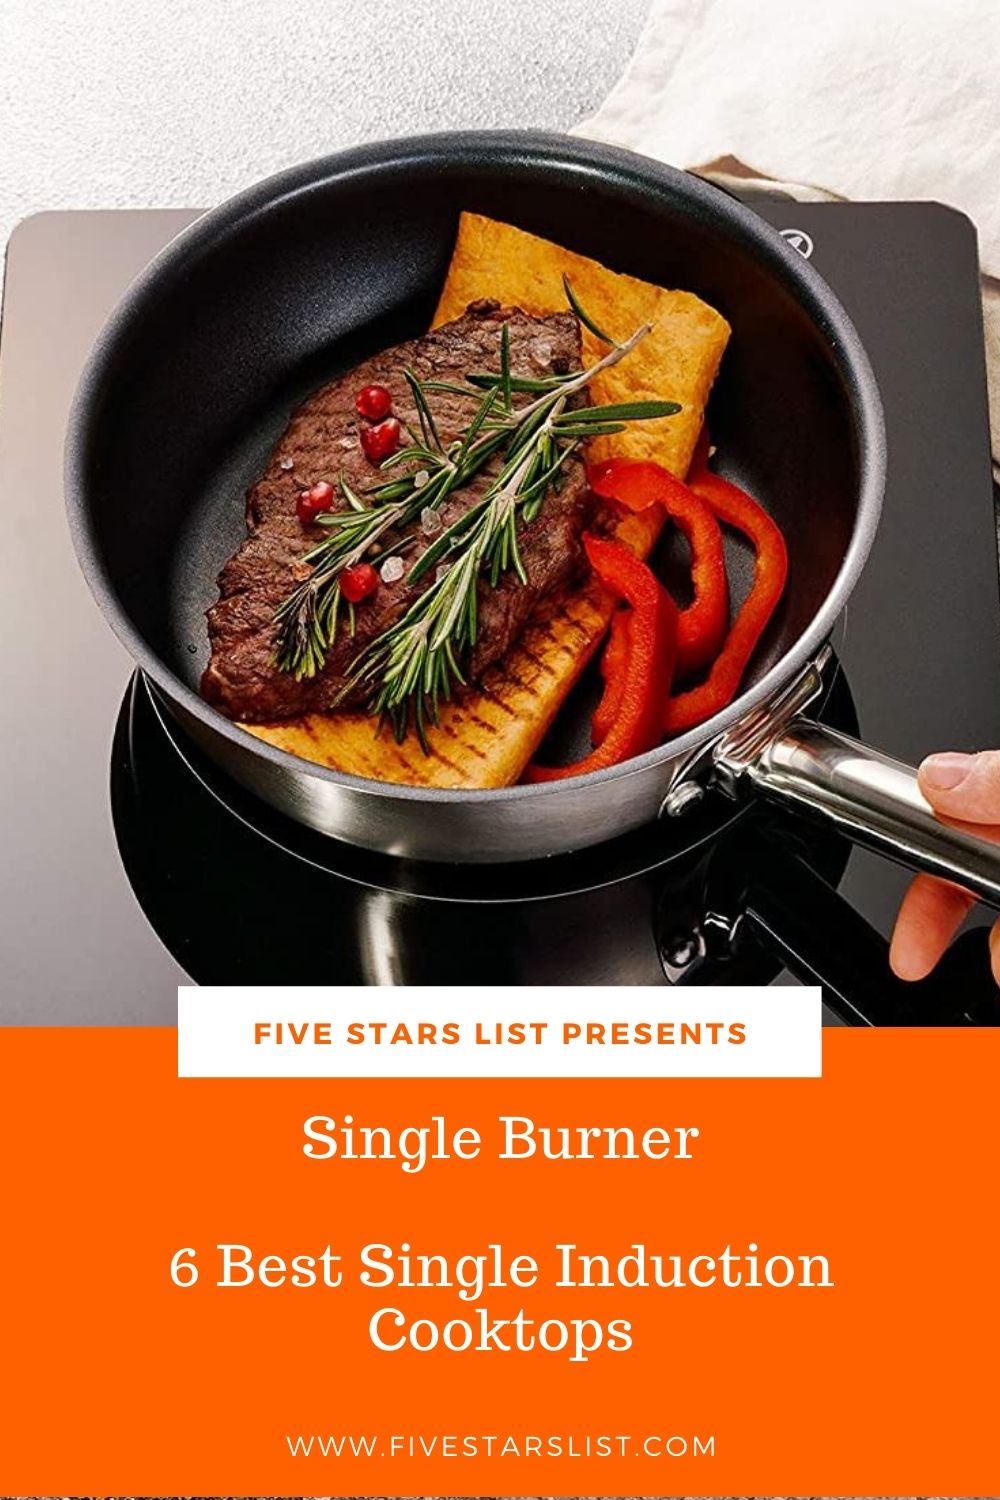 Single Burner: 6 Best Single Induction Cooktops 